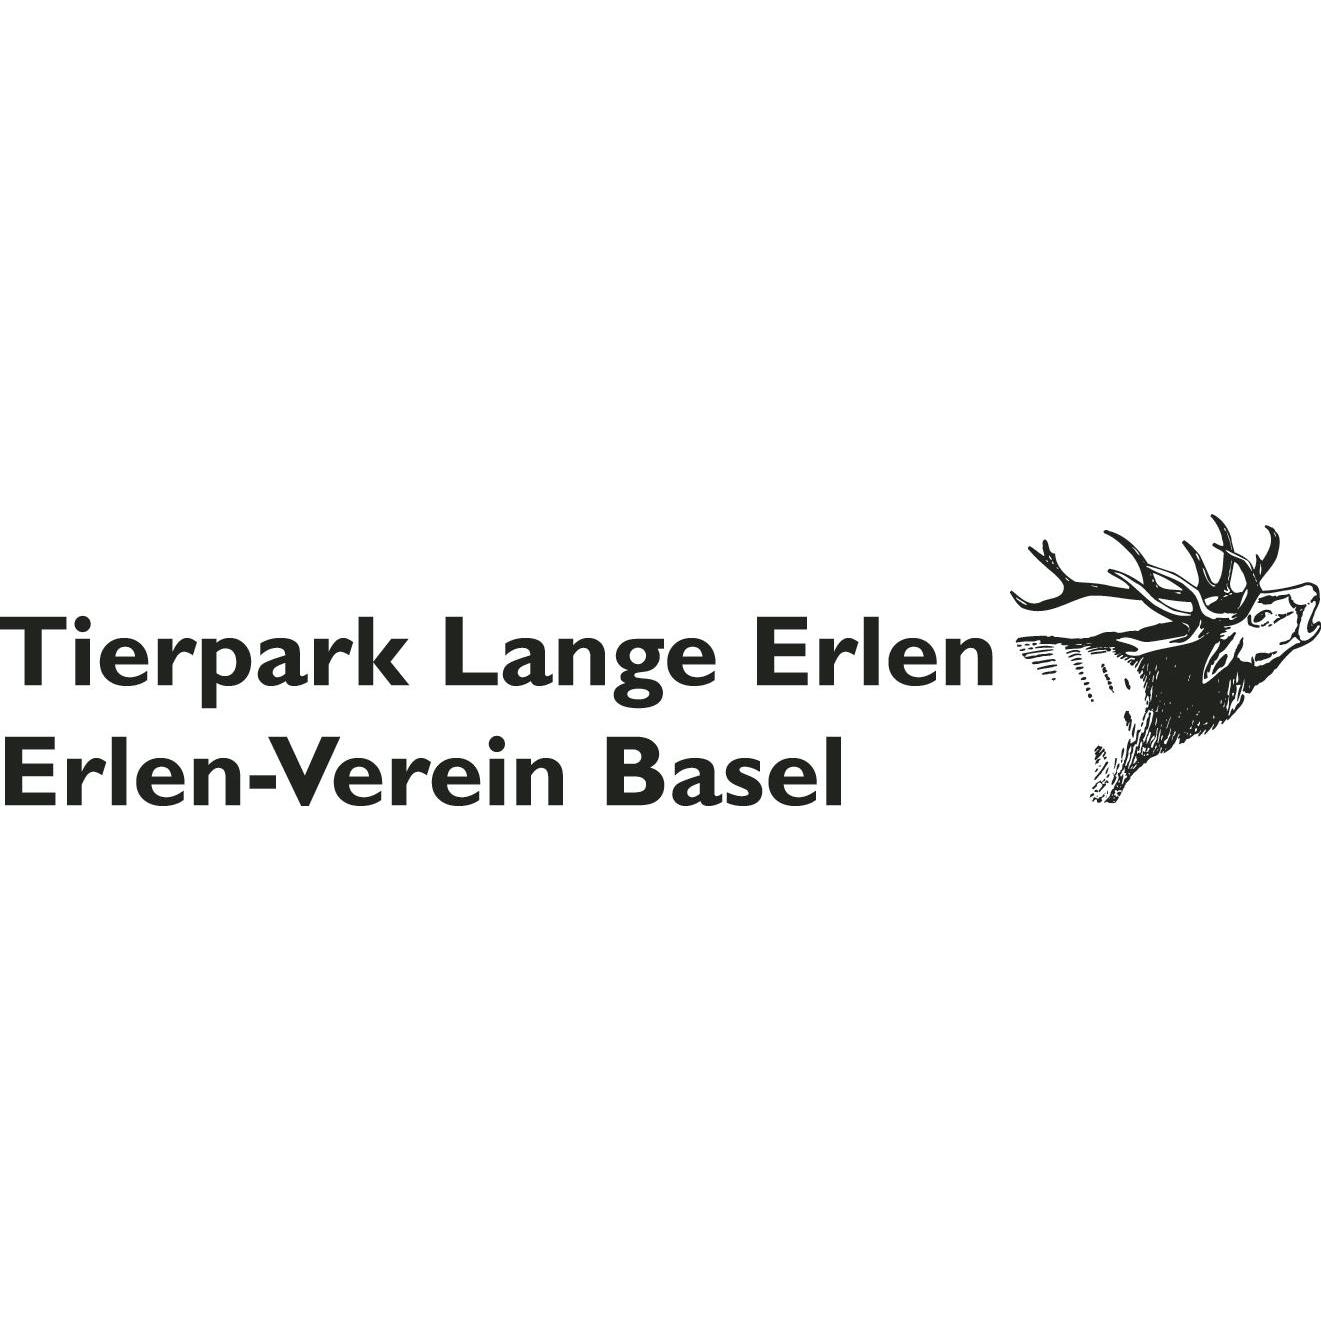 Tierpark Lange Erlen | Erlen-Verein Basel Logo